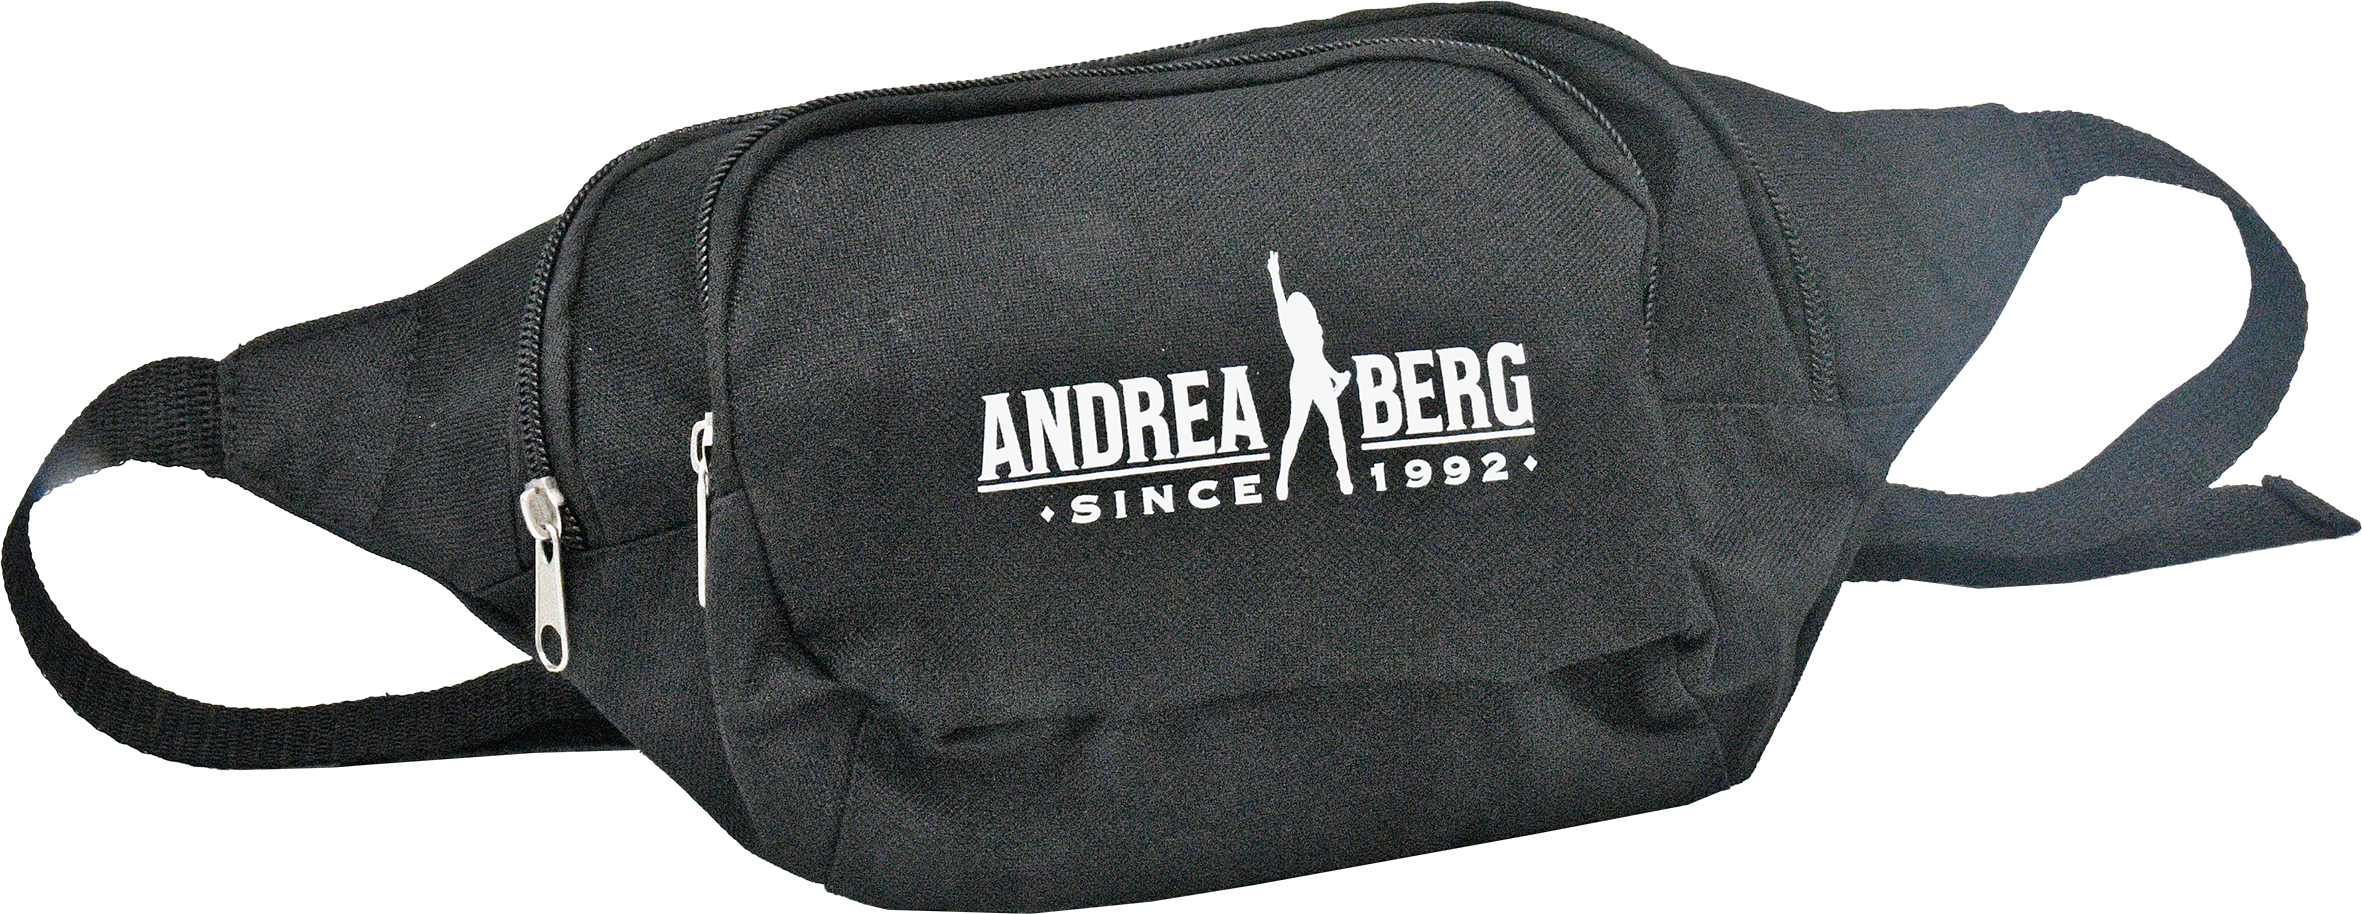 Bauchtasche Andrea Berg Since 1992